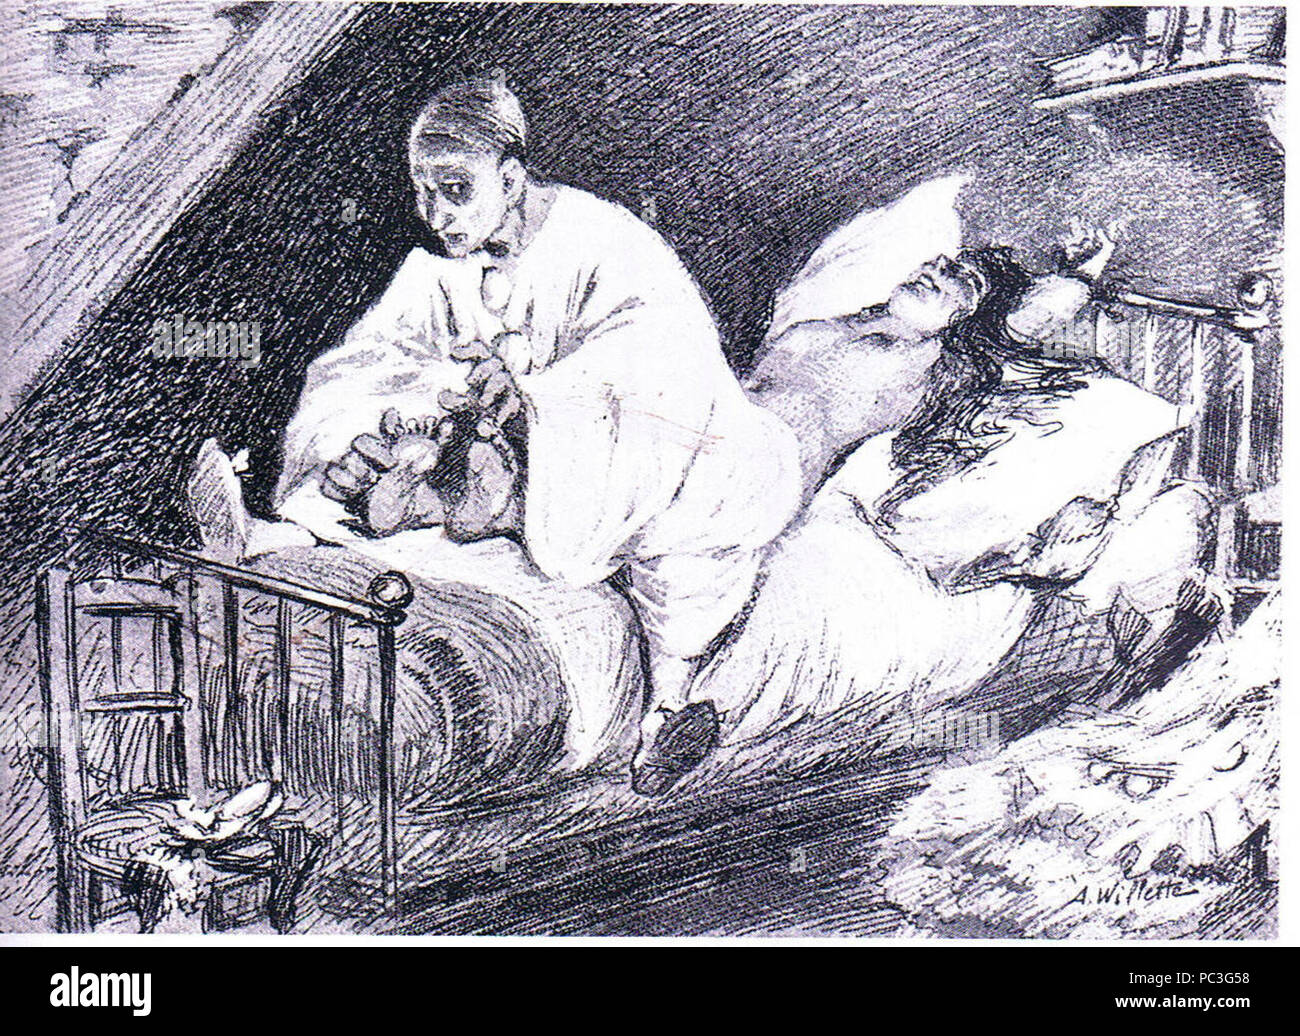 Adolphe Willette - Pierrot solletica aquilegia alpina a morte. Foto Stock